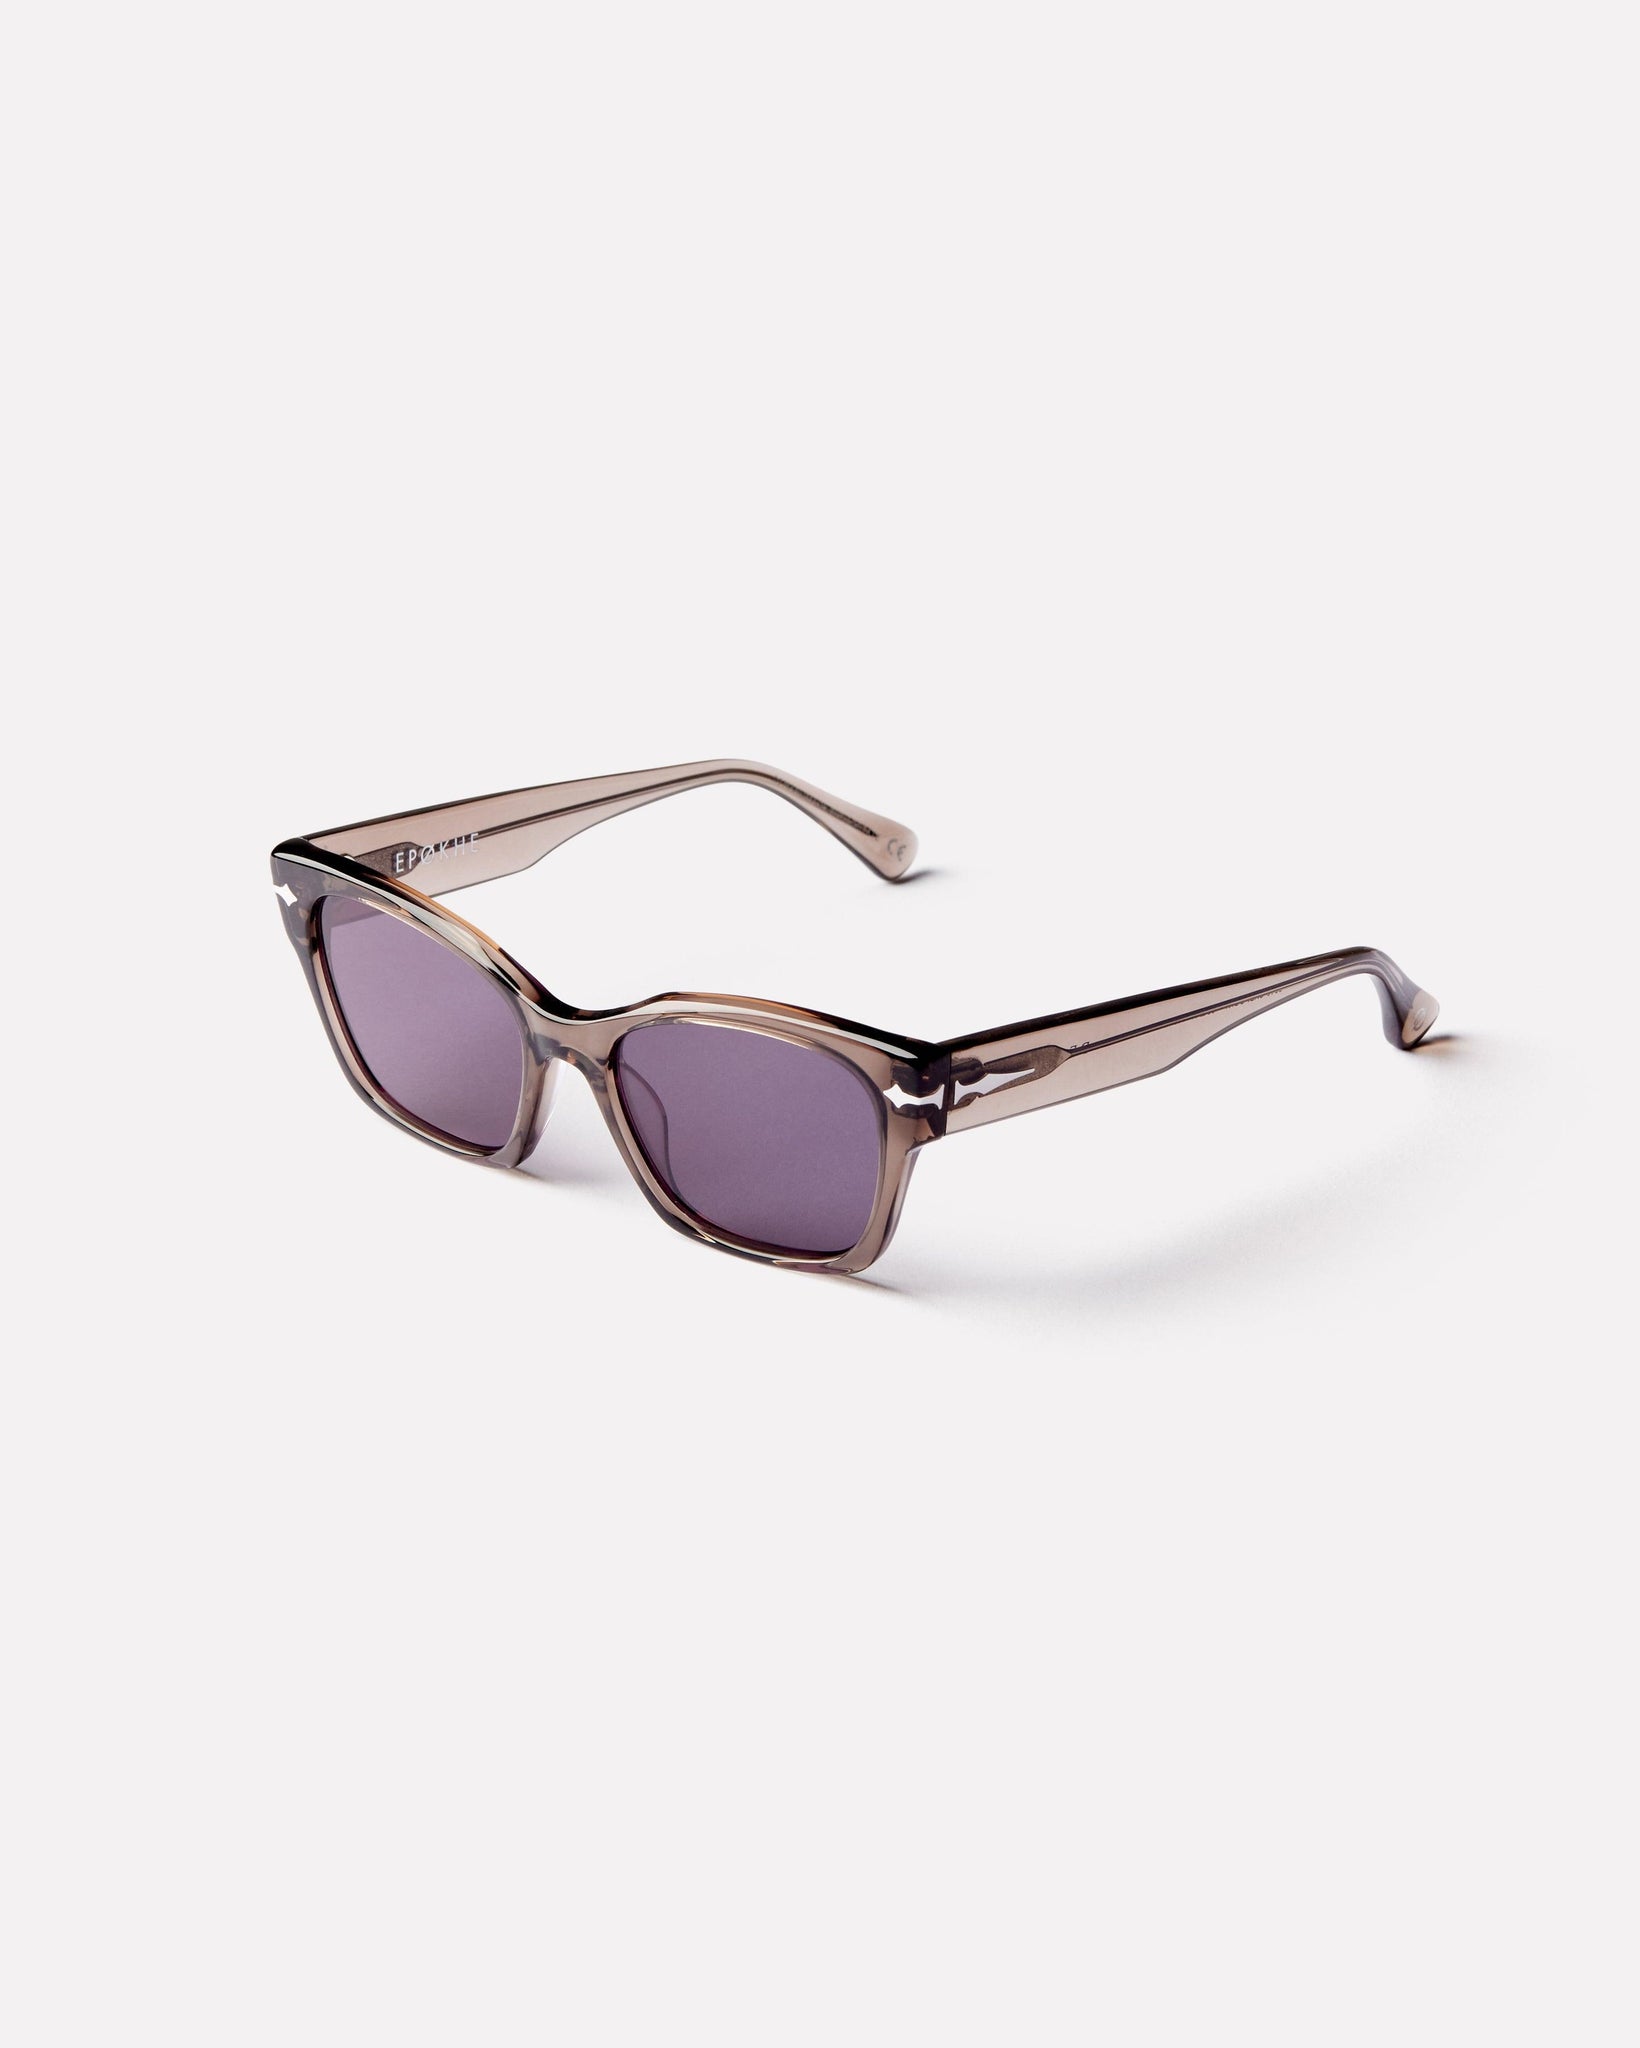 Desire - Carbon Polished / Grey - Sunglasses - EPOKHE EYEWEAR